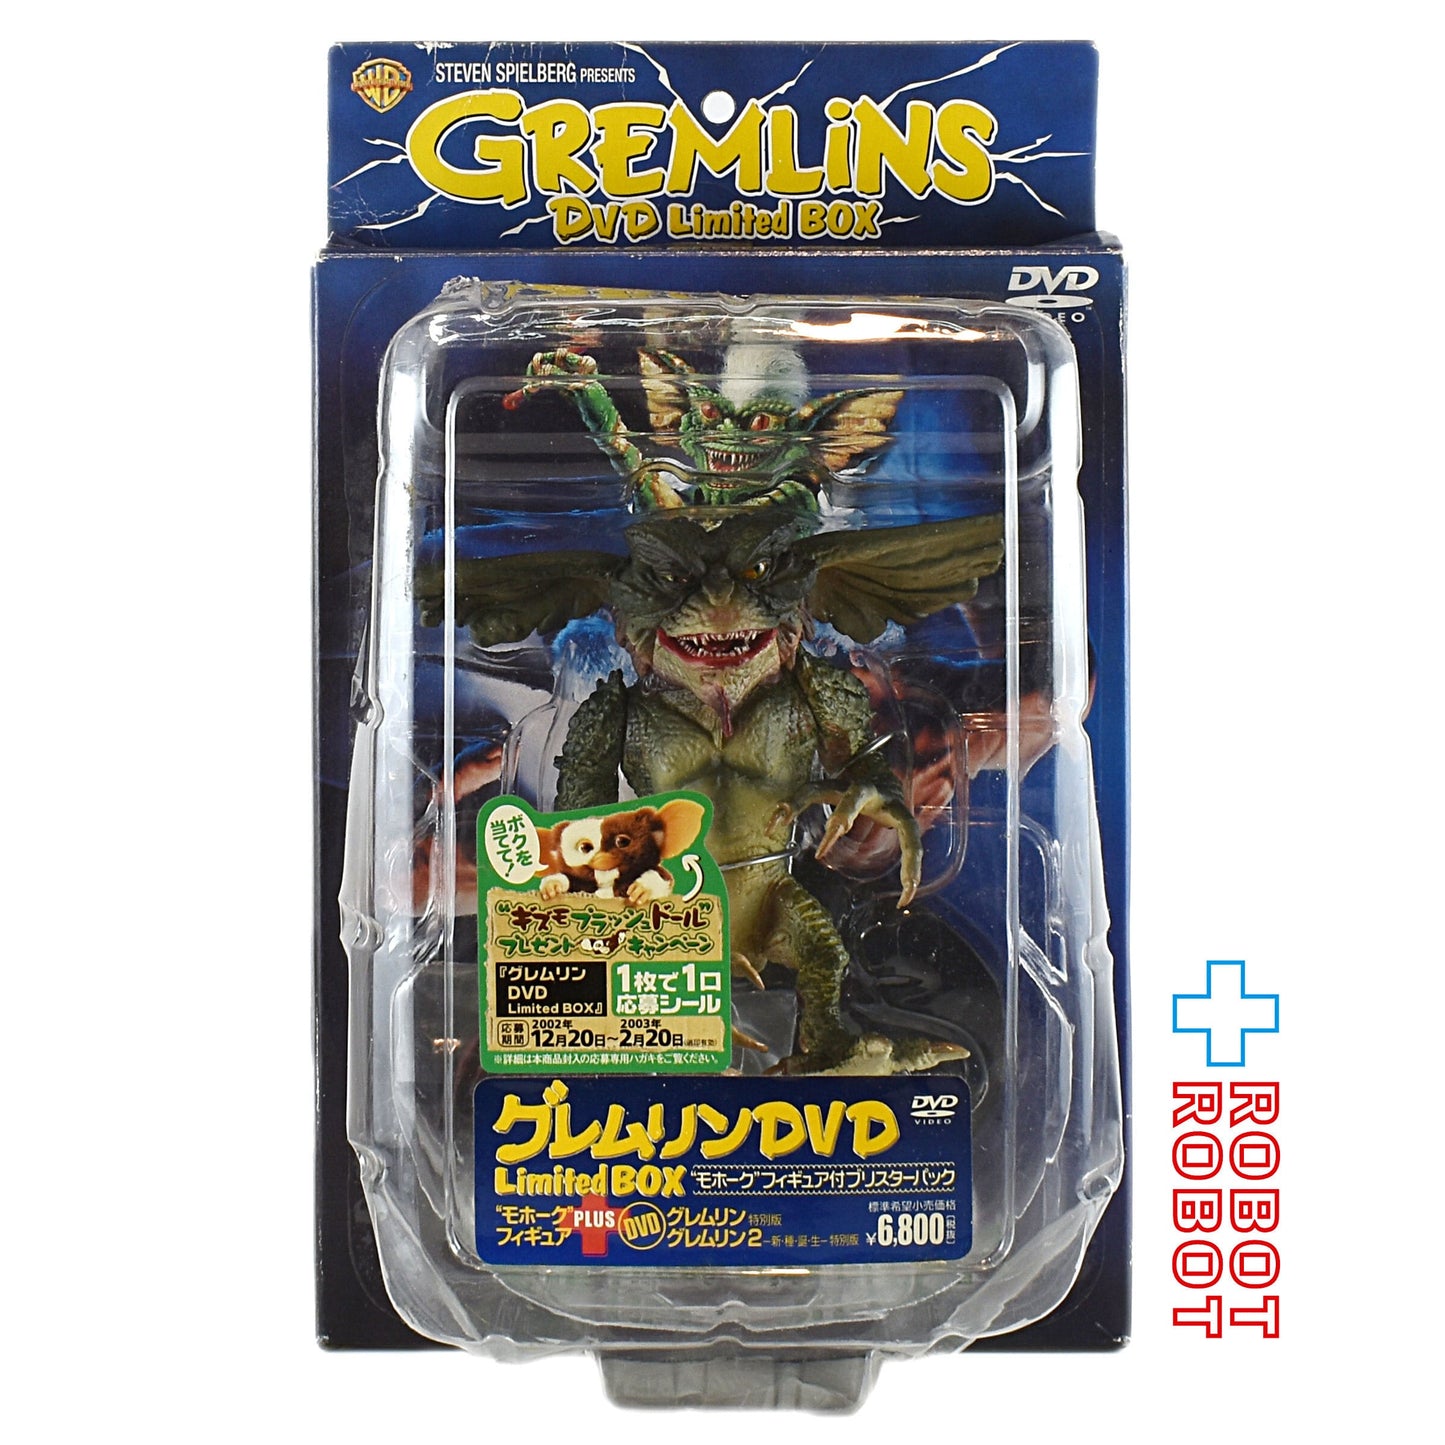 グレムリン DVD Limited Box モホーク フィギュア付ブリスターパック 未開封